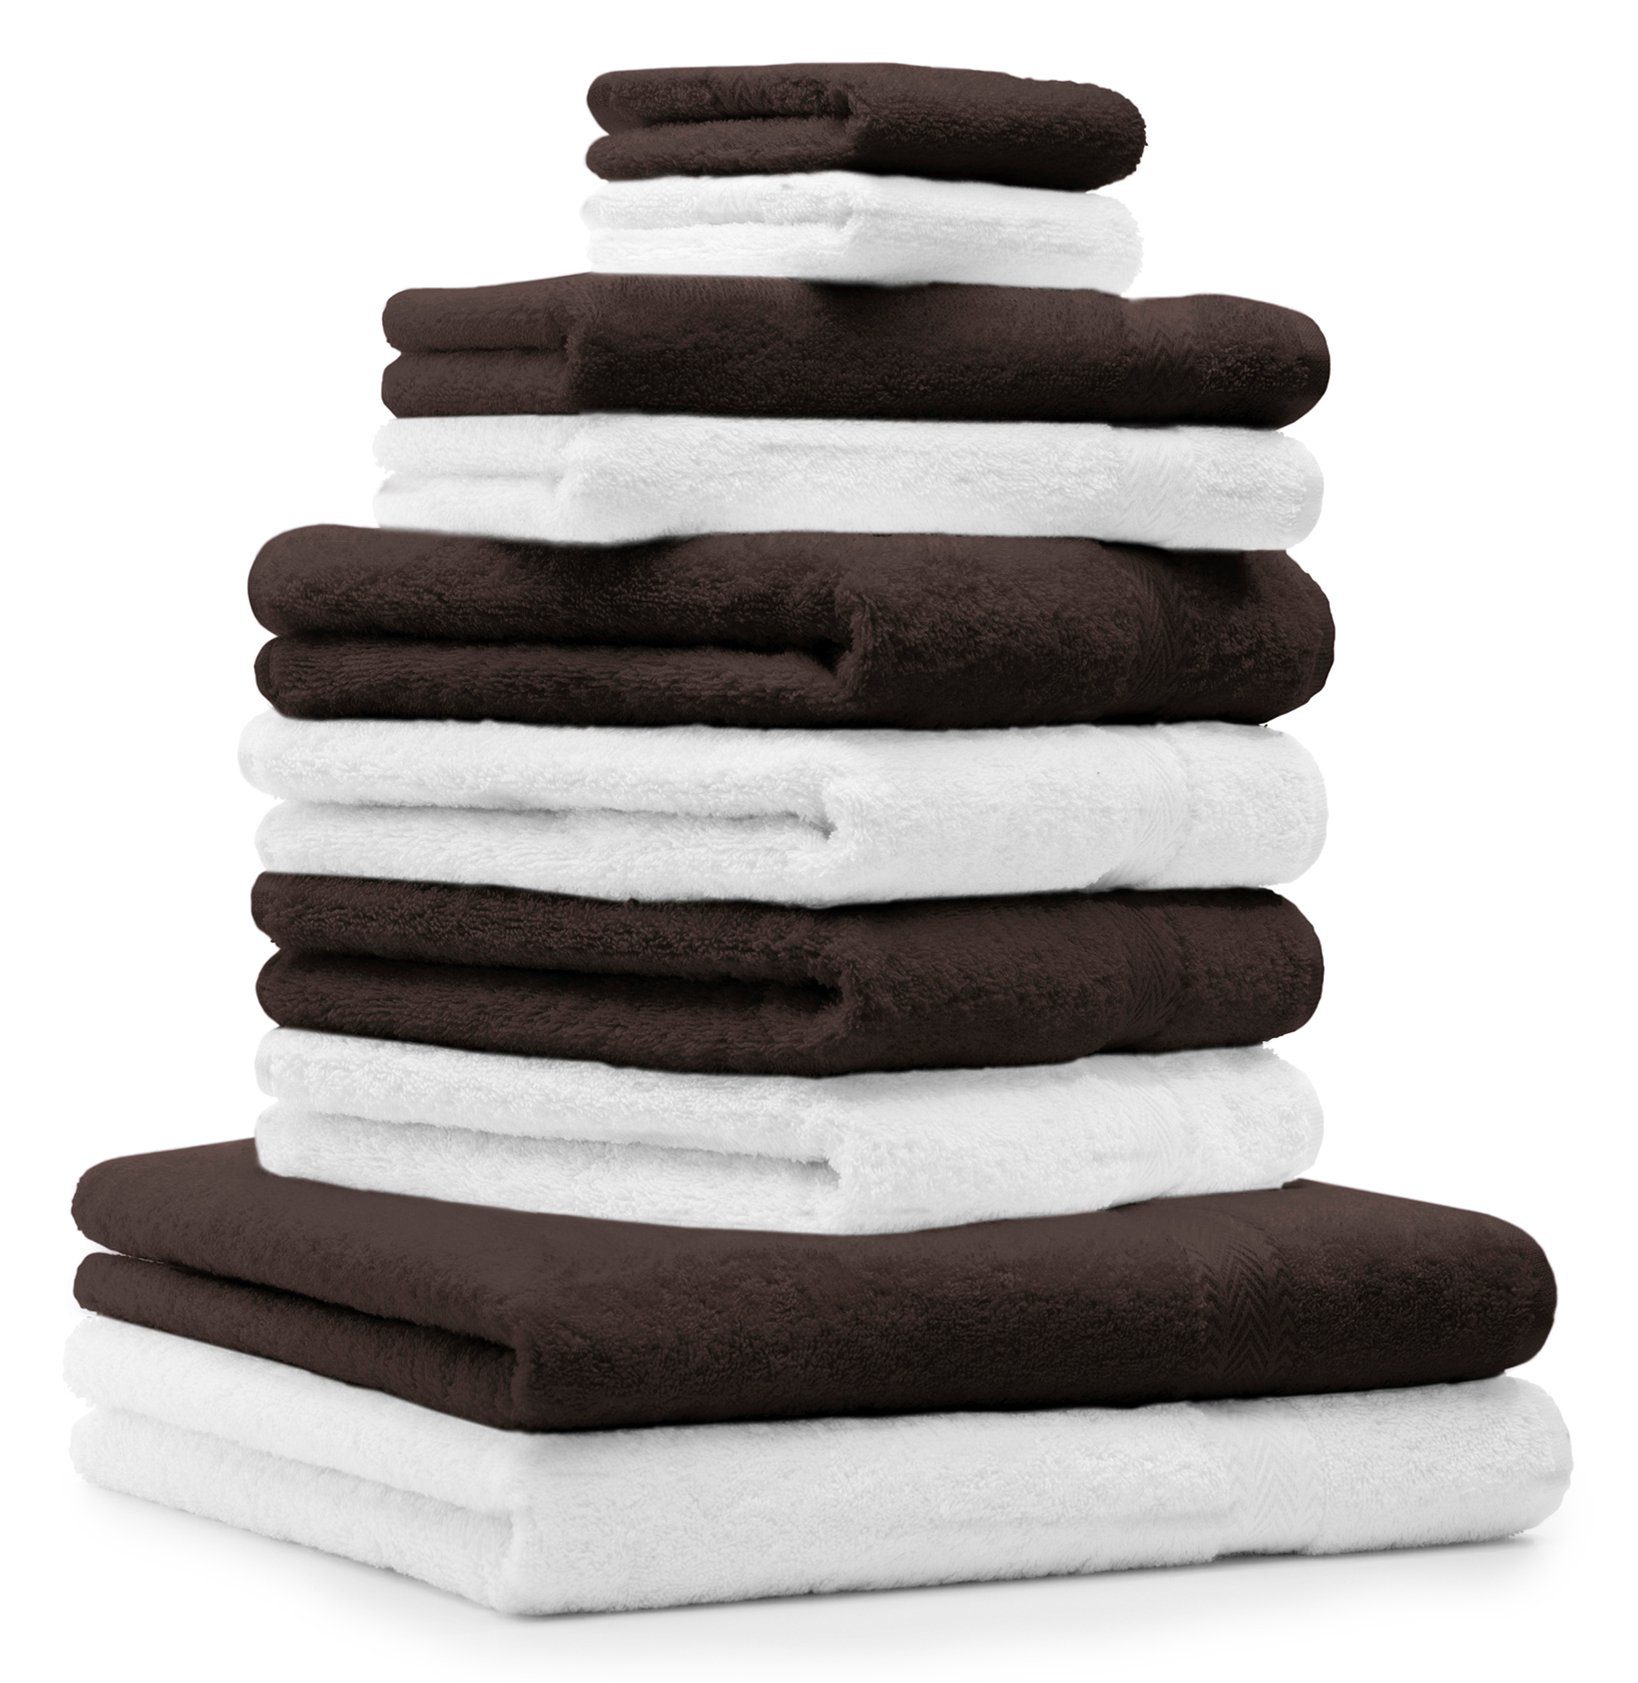 Betz Handtuch Set 10-tlg. Handtuch-Set CLASSIC Farbe weiß & dunkelbraun, 100% Baumwolle